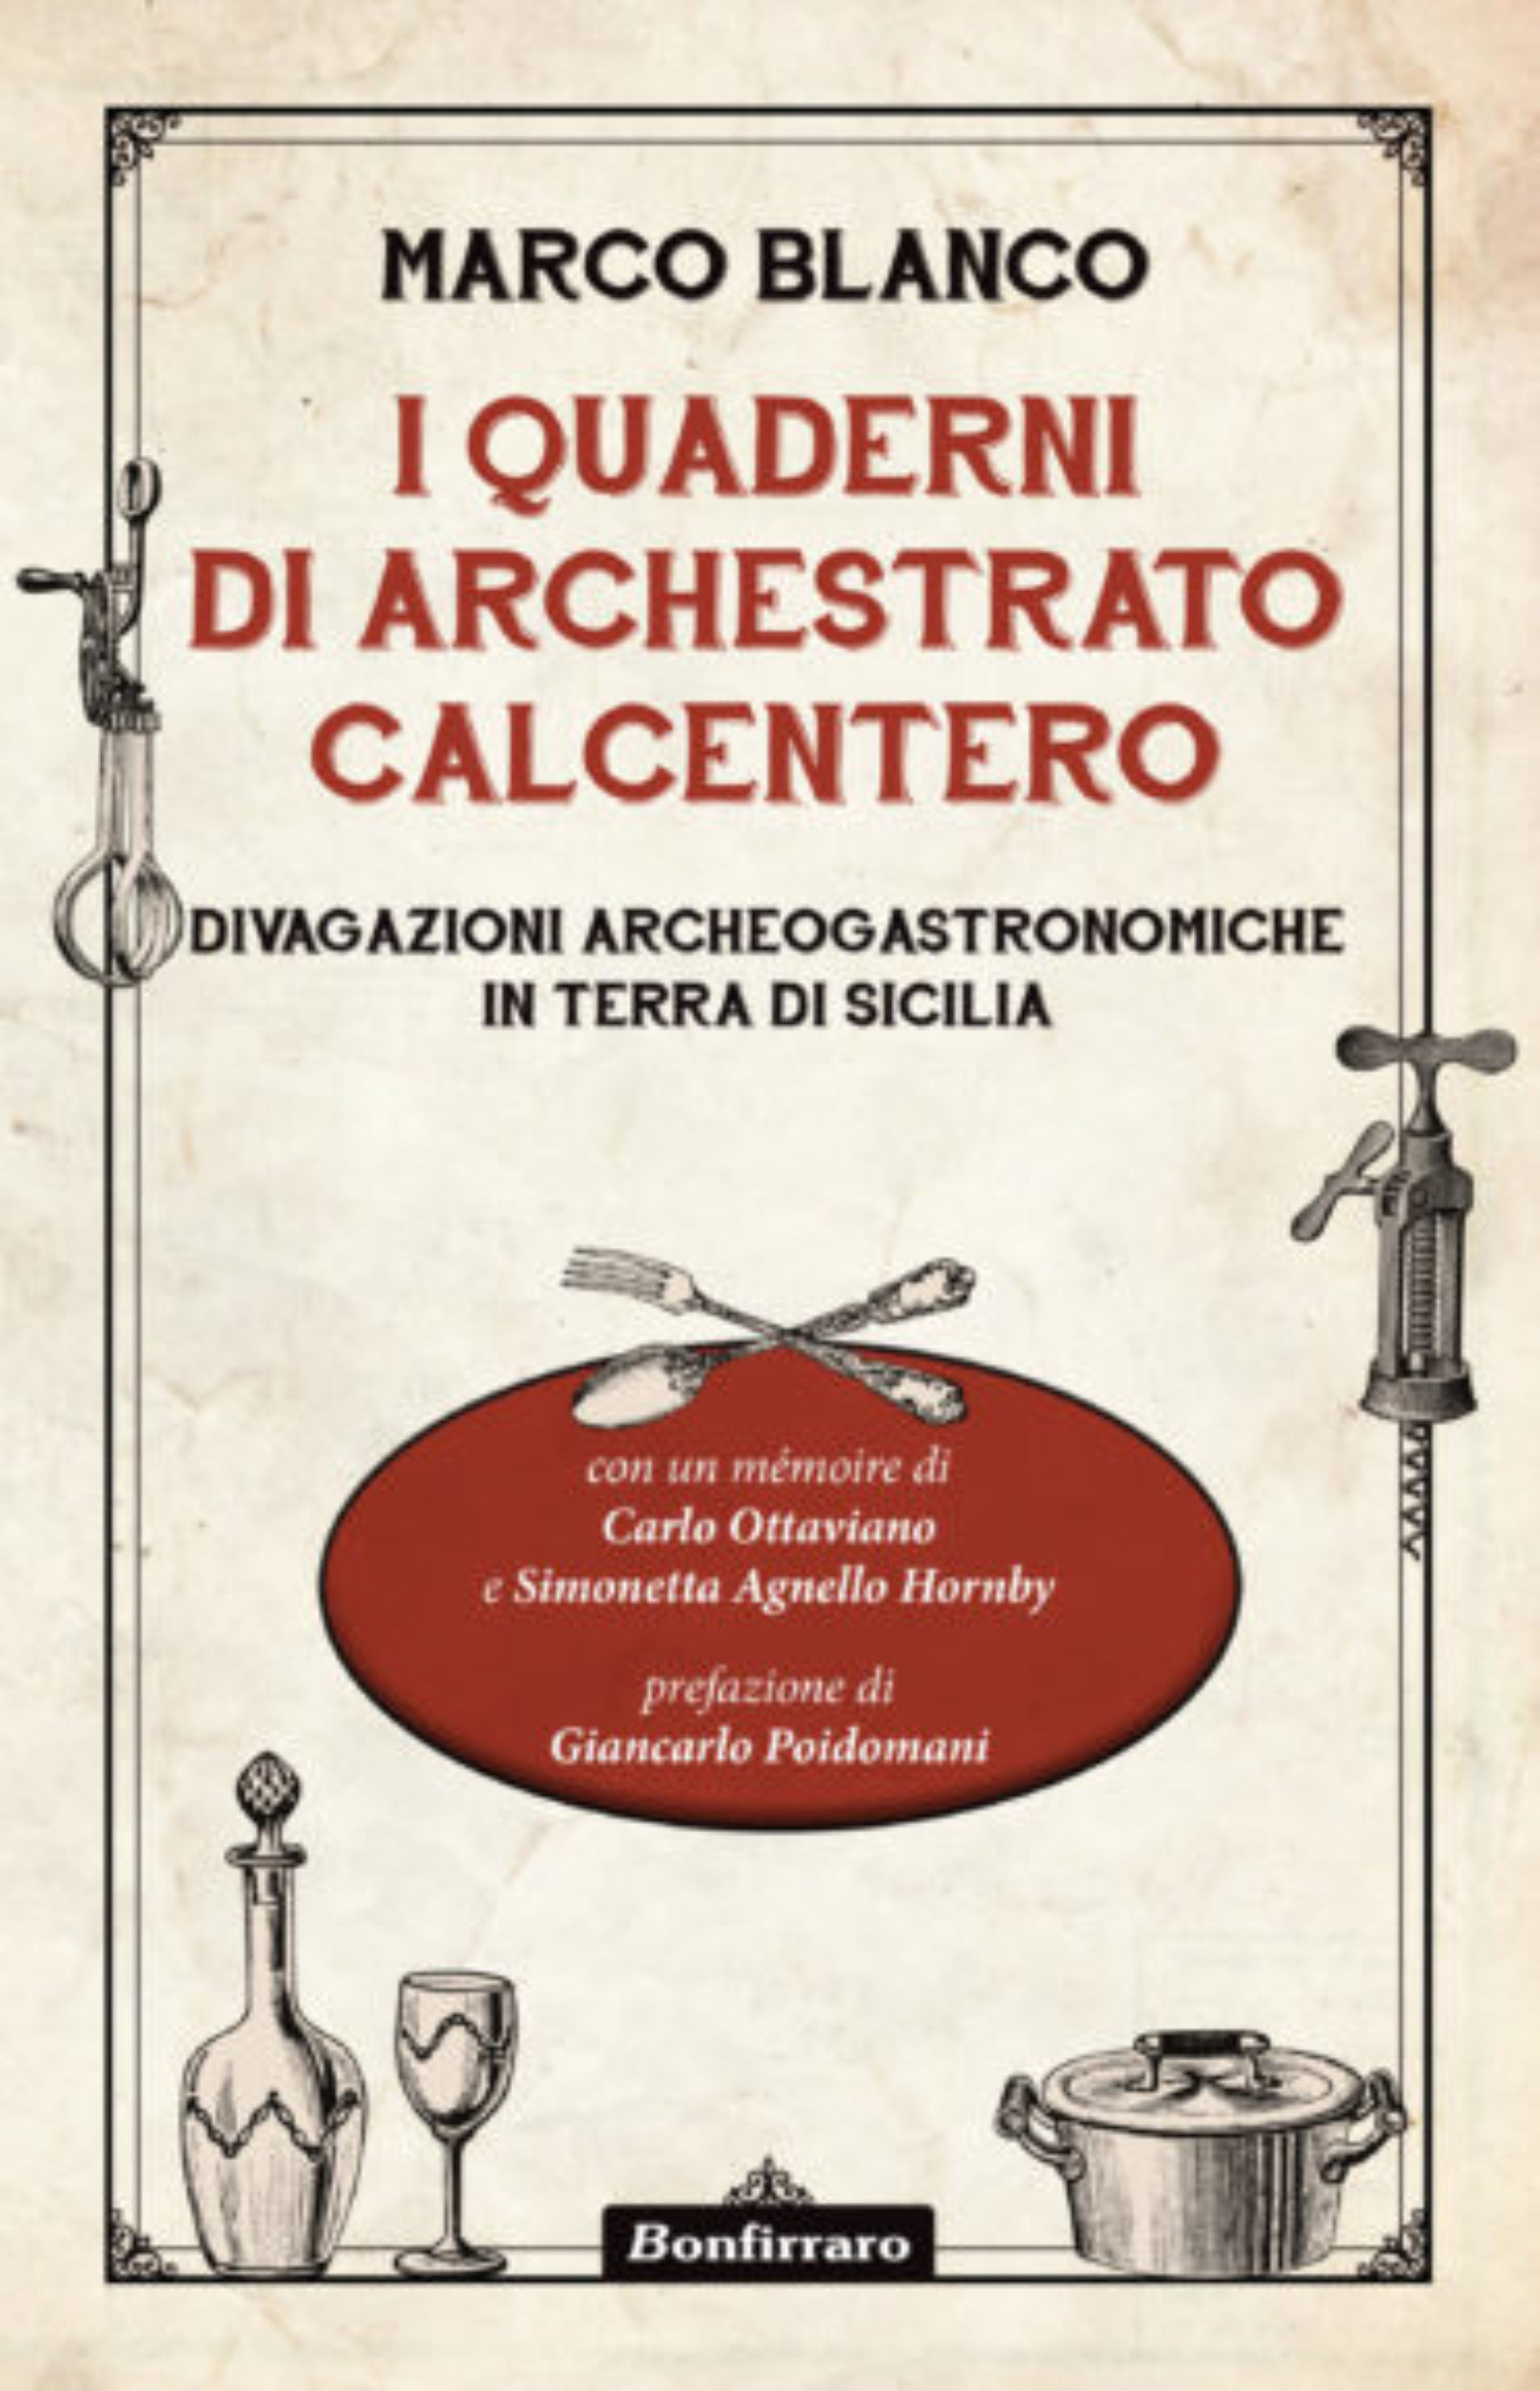 Tutti i segreti dell’antica cucina siciliana svelati nel nuovo libro di Marco Blanco